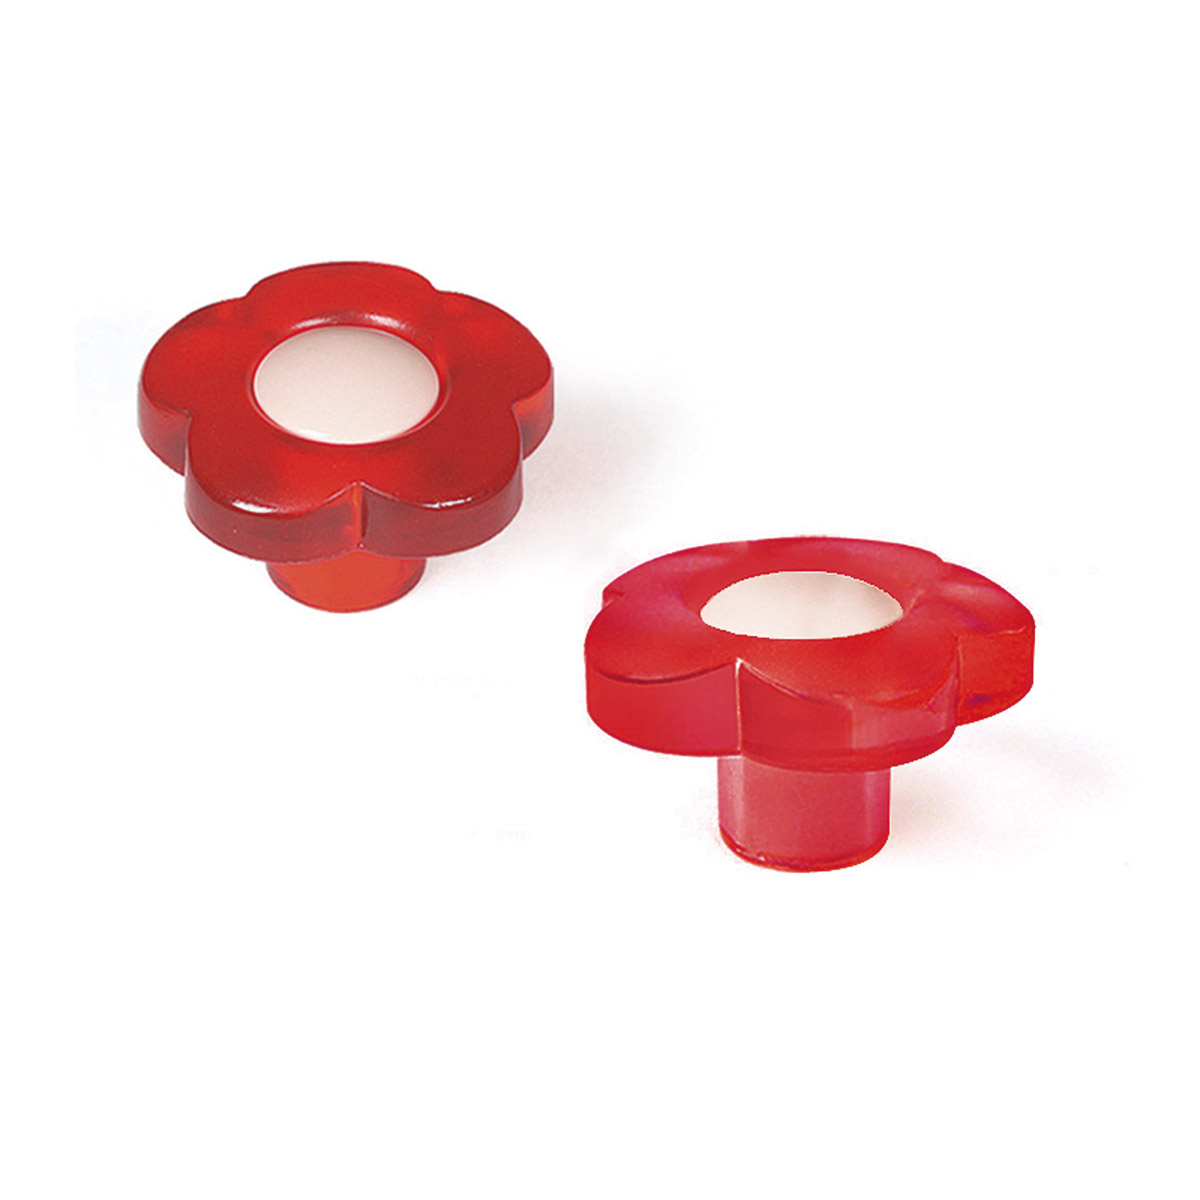 Bouton en plastique avec finition rouge, dimensions: 34x34x20mm Ø: 34mm